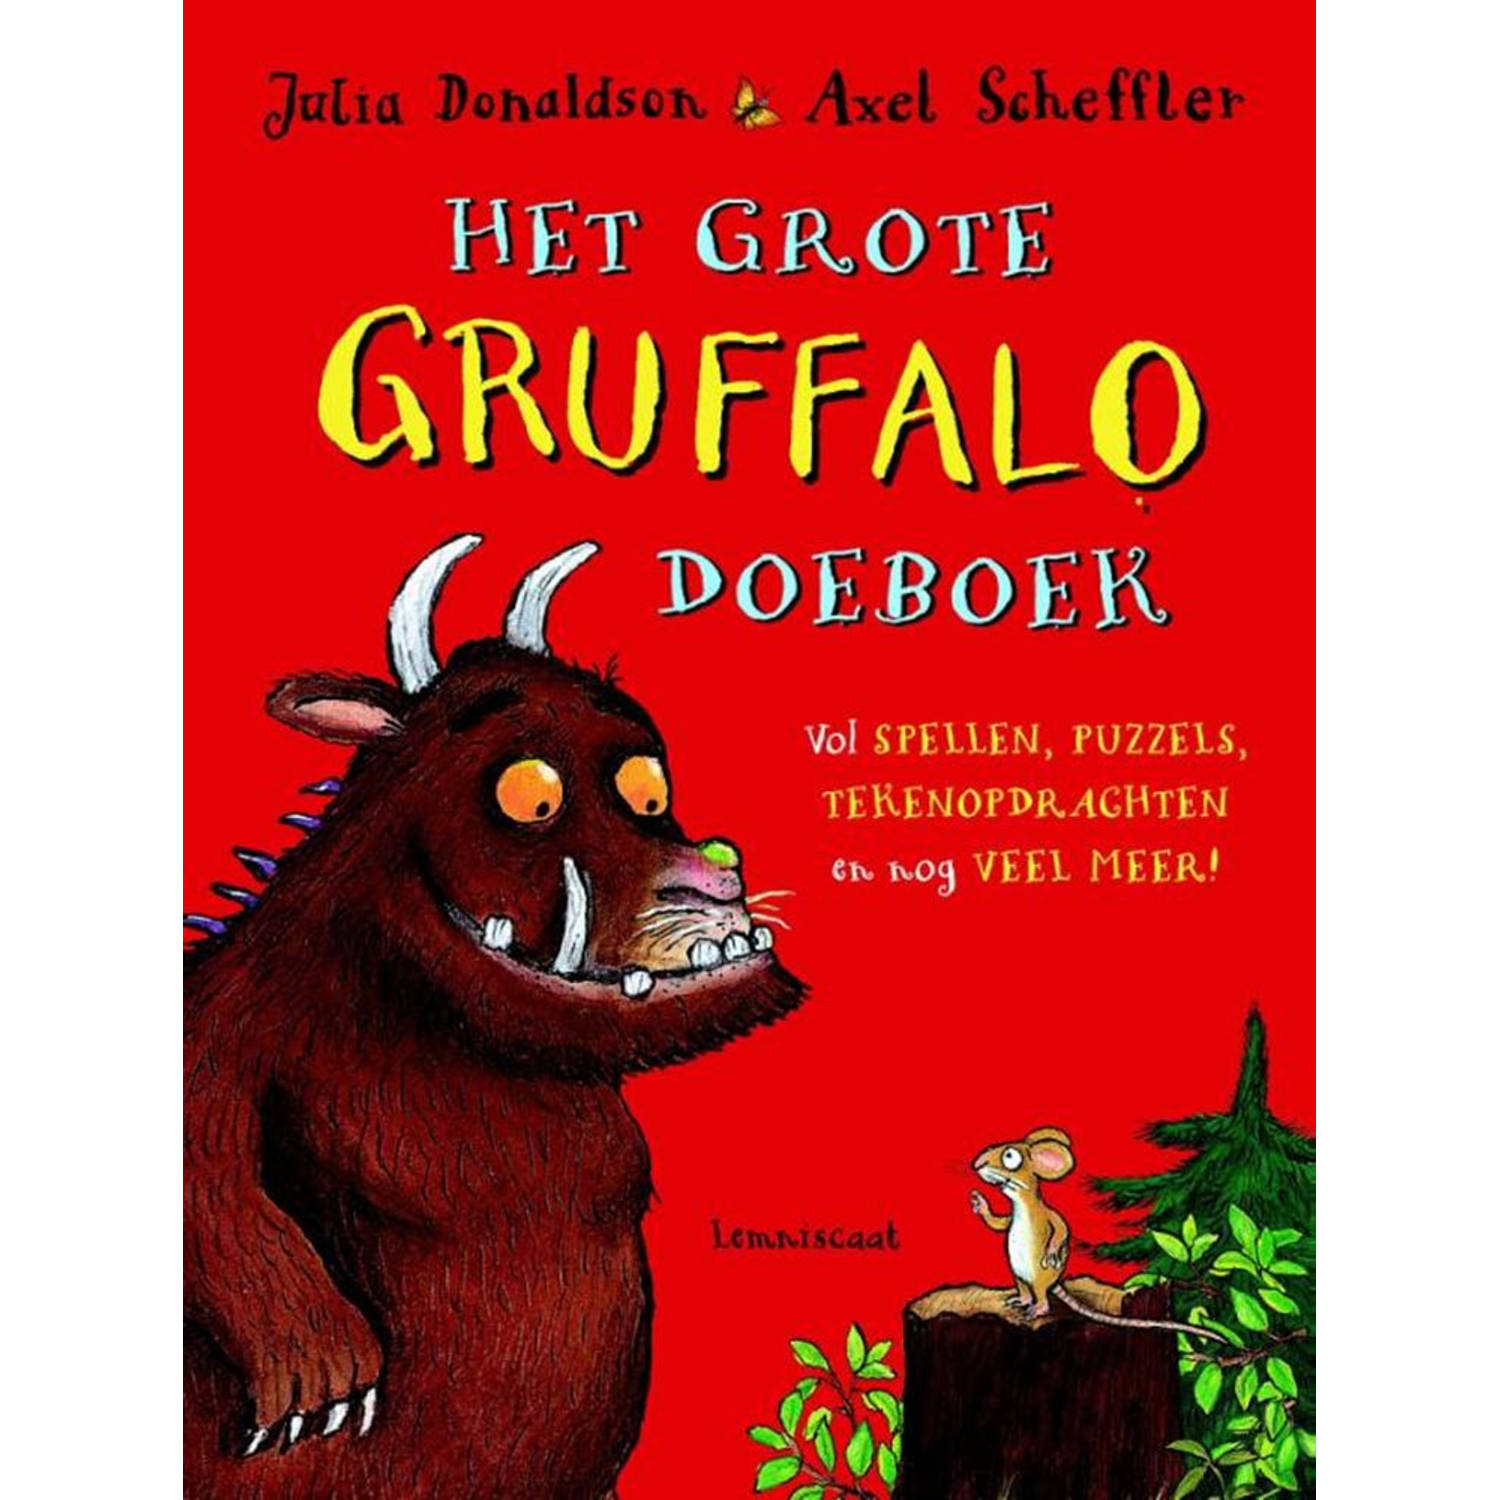 Het grote Gruffalo Doeboek. vol spellen, puzzels, tekenopdrachten en nog veel meer!, Julia Donaldson